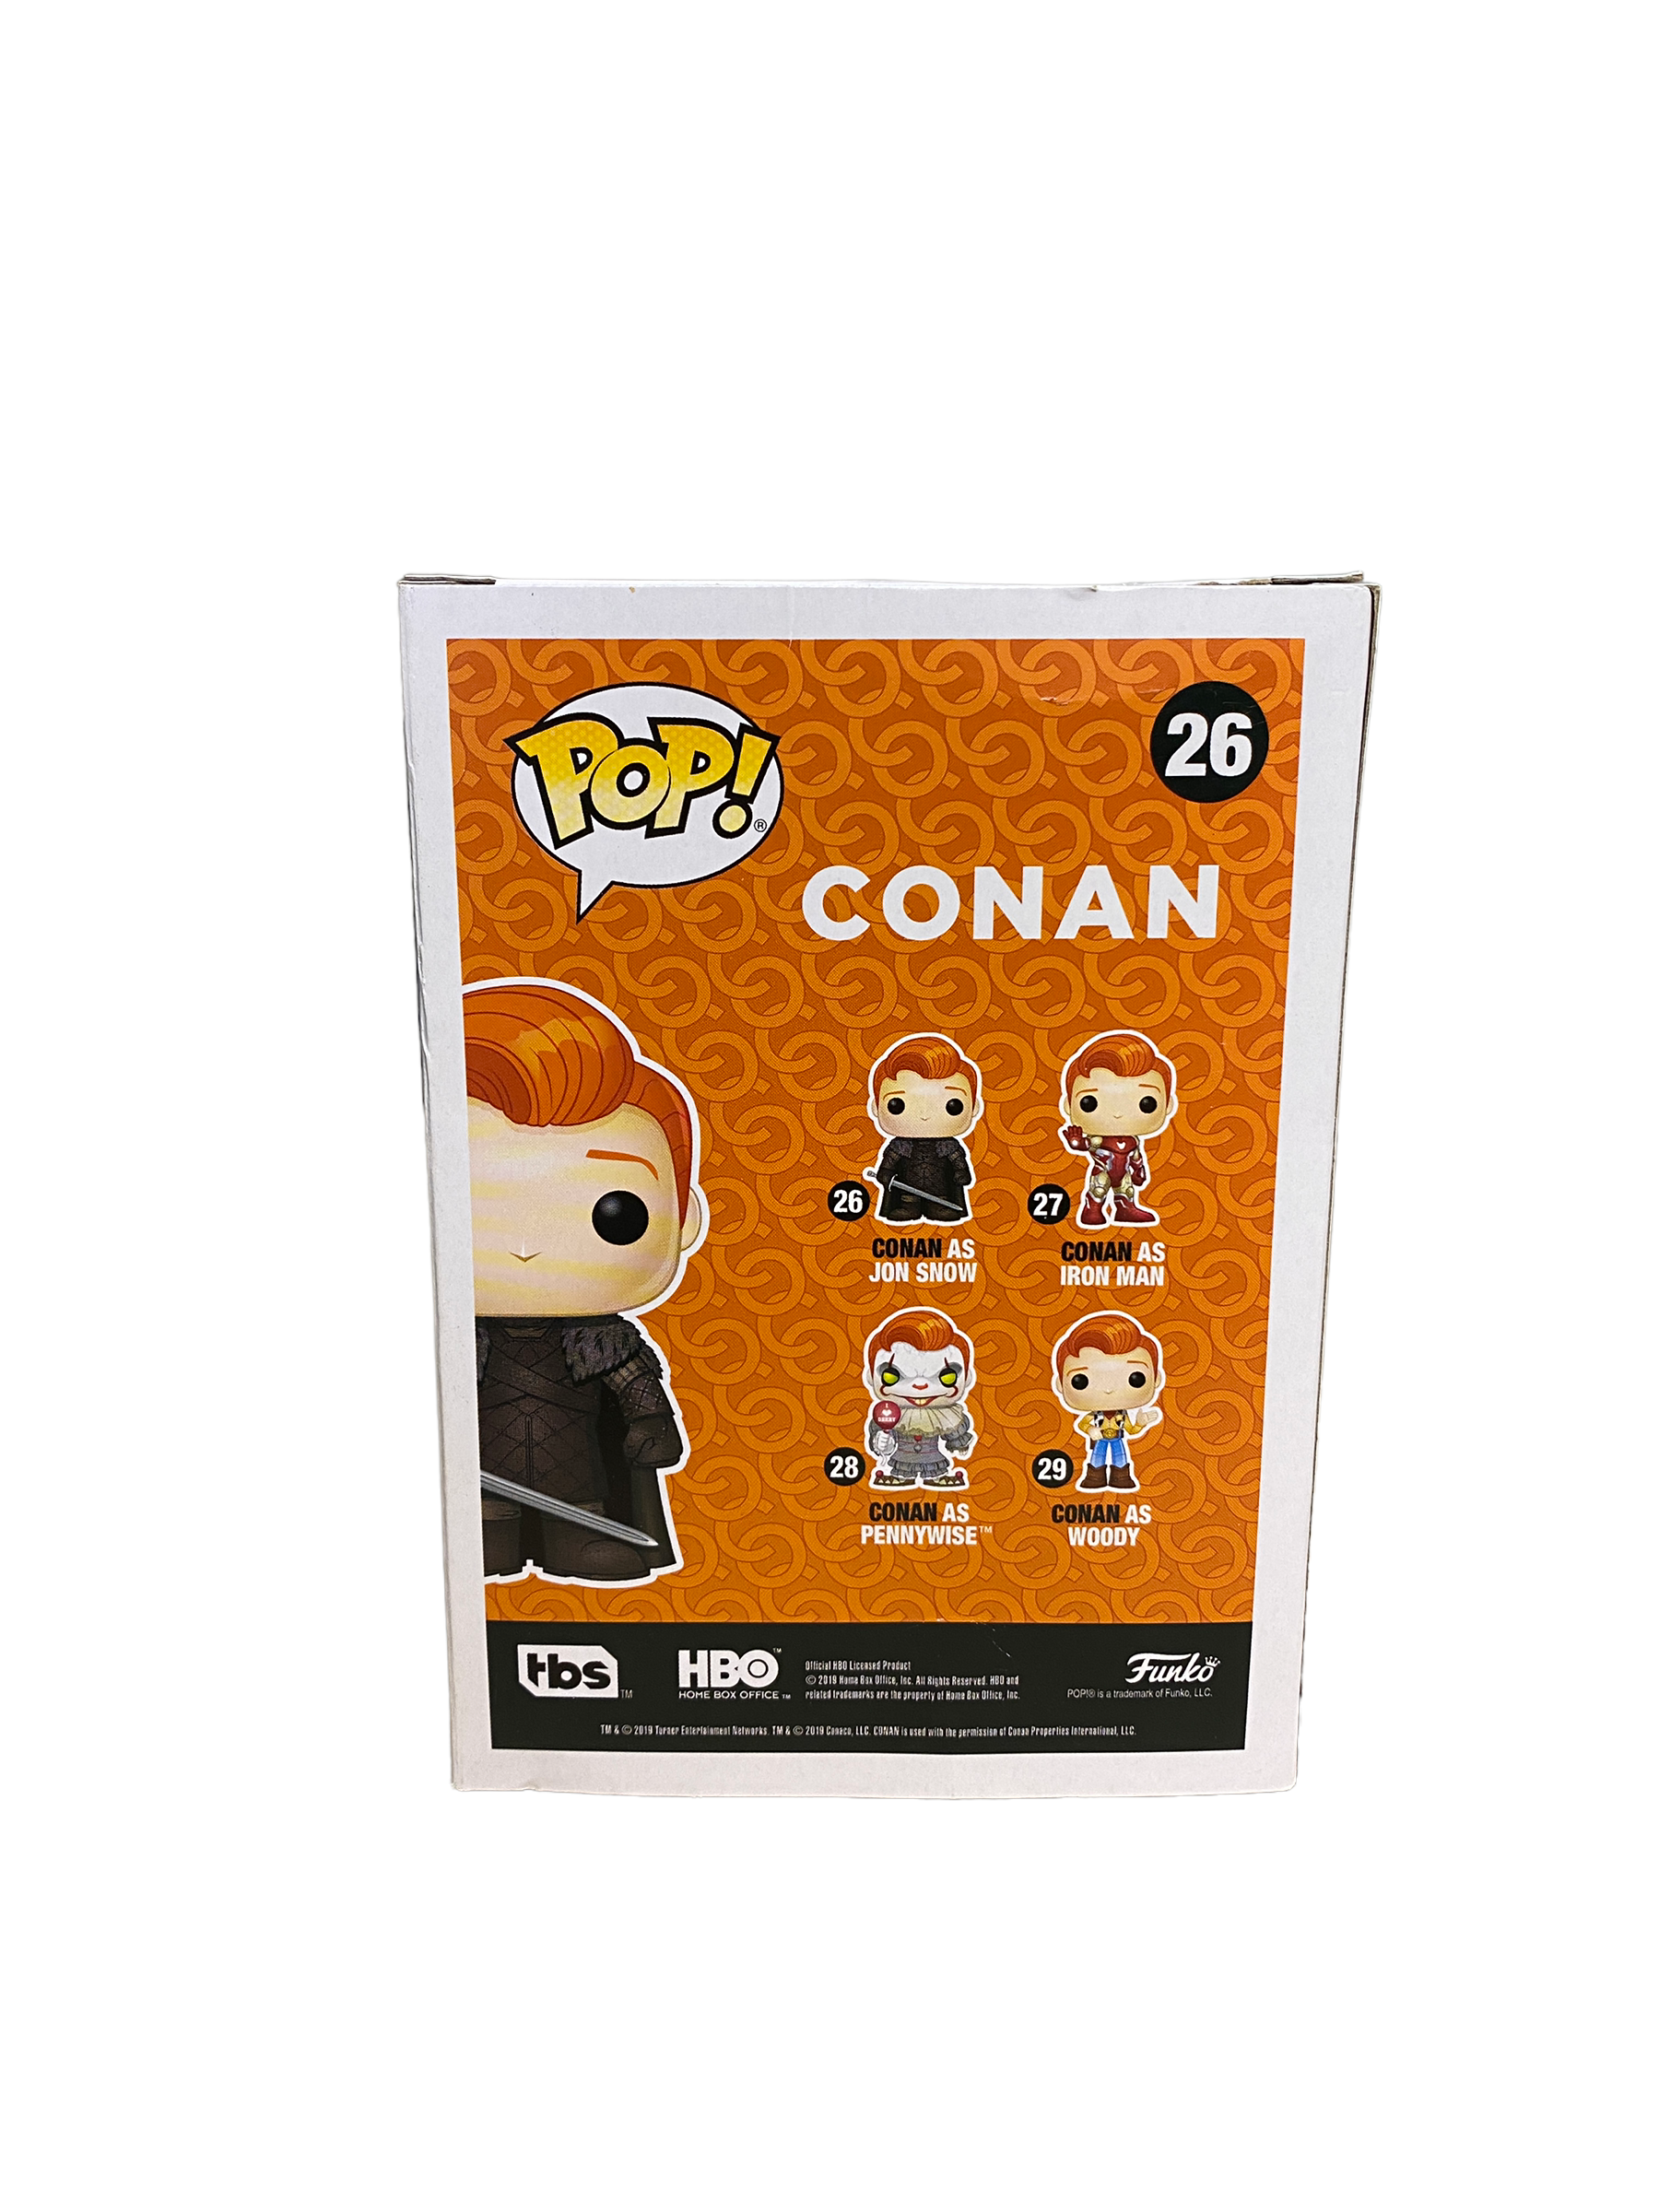 Conan As Jon Snow #26 Funko Pop! - Conan / Game Of Thrones - SDCC 2019 Exclusive - Condition 7.5/10